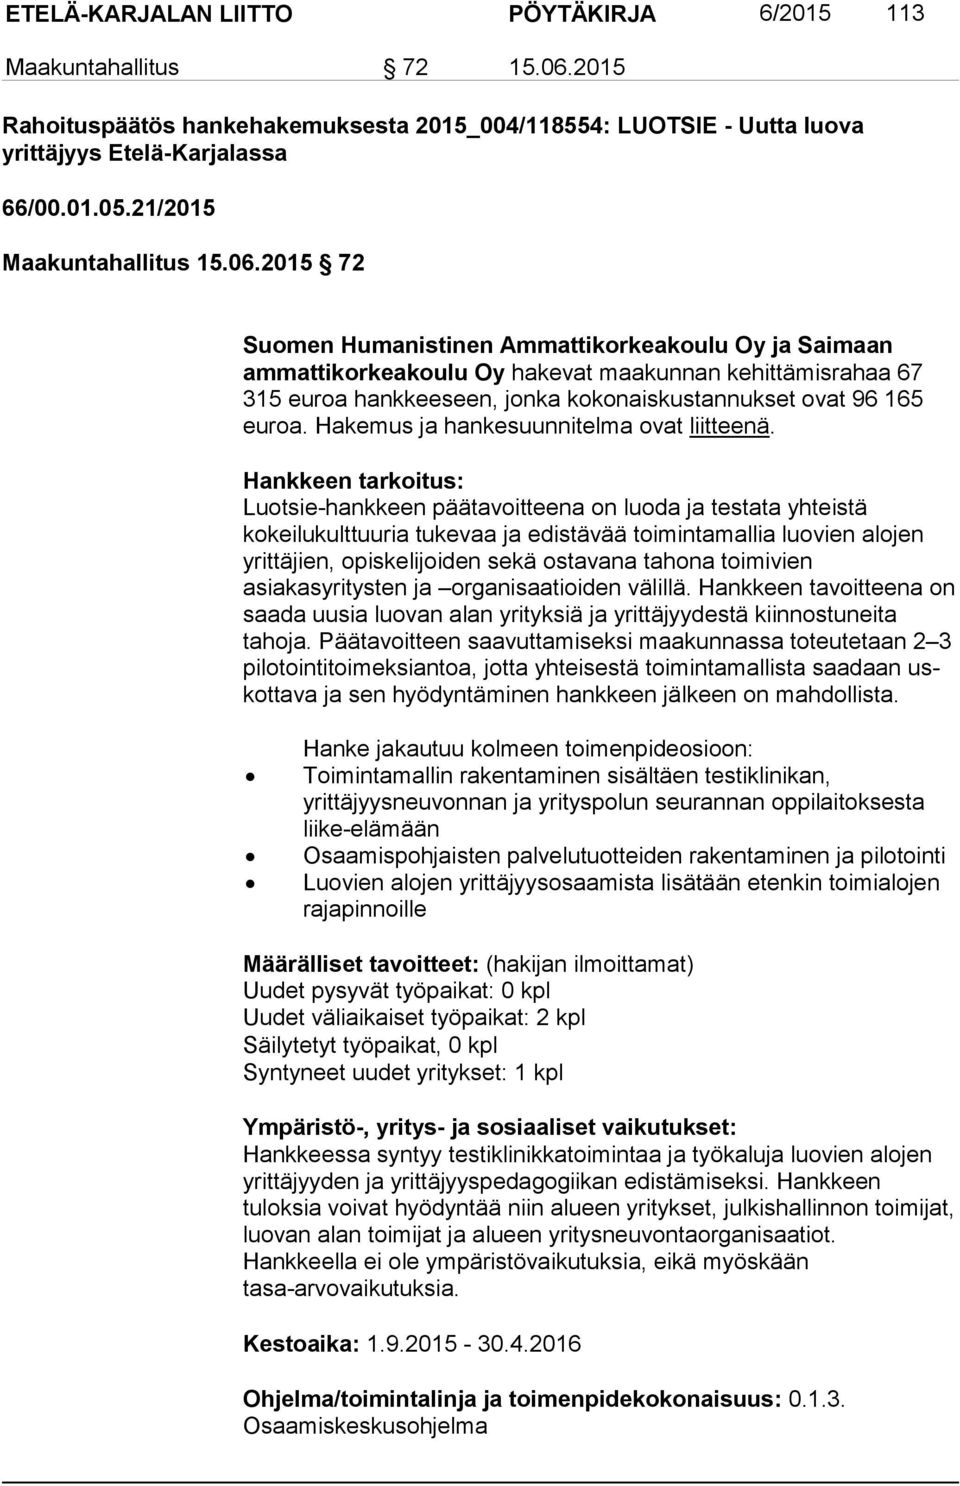 2015 72 Suomen Humanistinen Ammattikorkeakoulu Oy ja Saimaan ammattikorkeakoulu Oy ha ke vat maakunnan kehittämisrahaa 67 315 euroa hankkeeseen, jonka ko ko nais kus tan nuk set ovat 96 165 euroa.